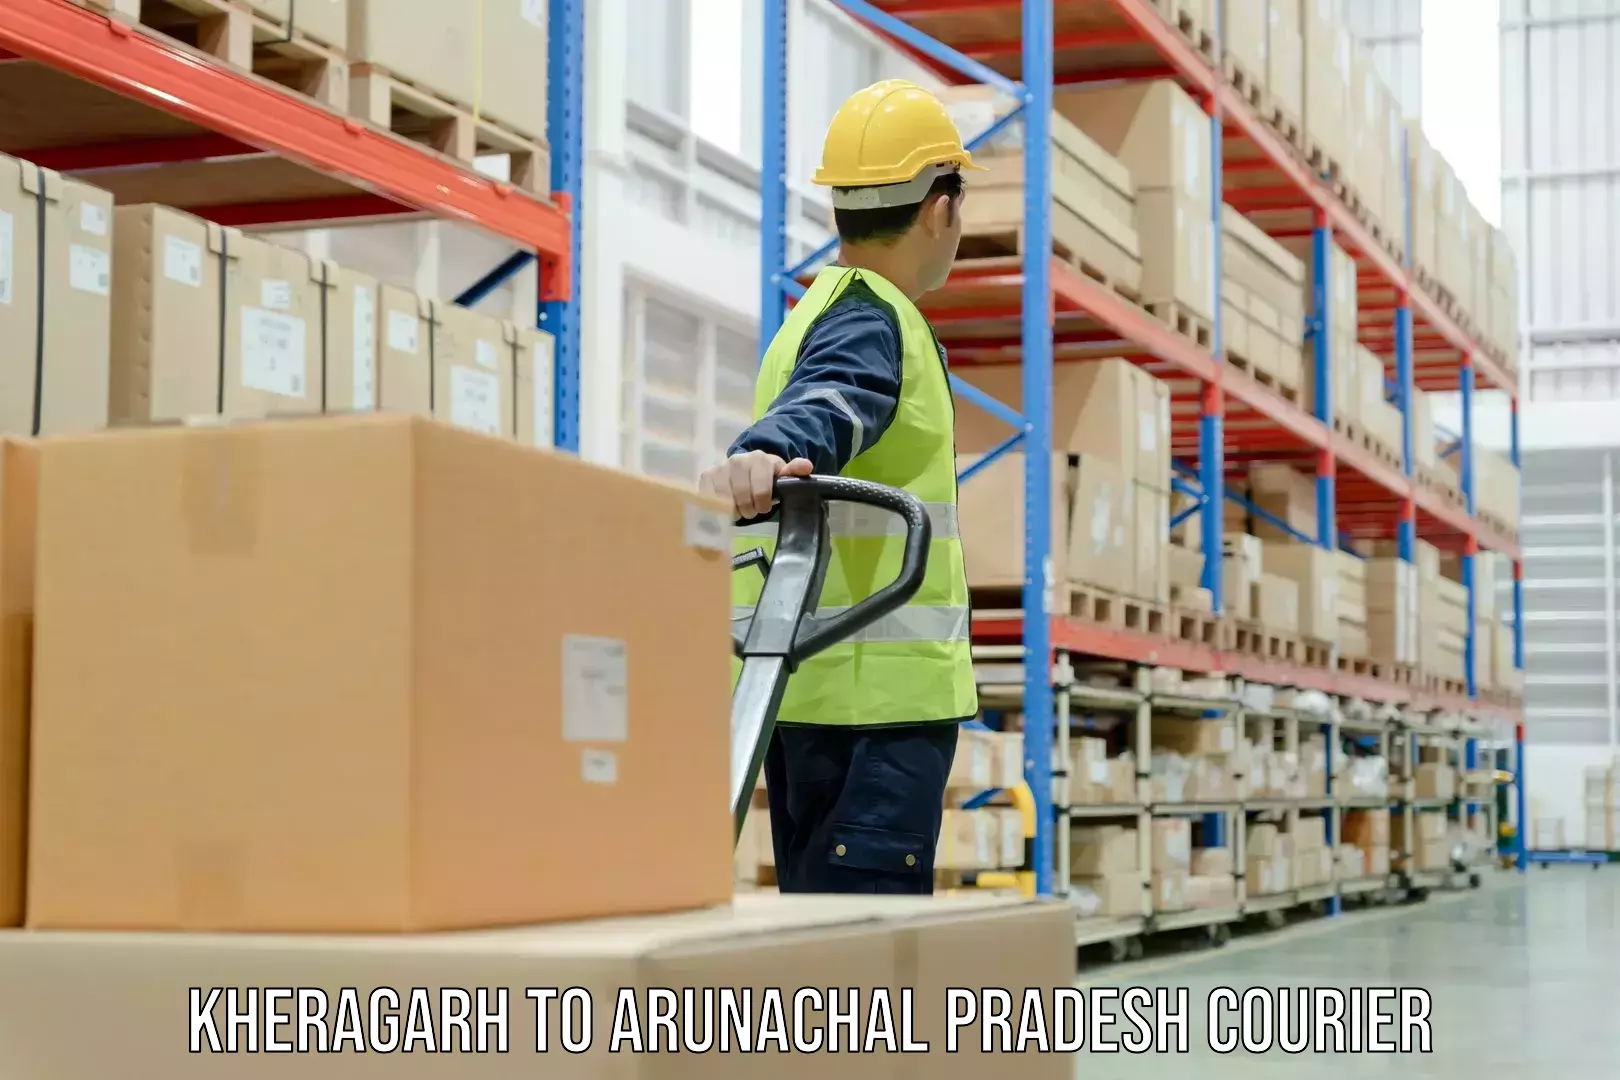 Lightweight parcel options Kheragarh to Dirang